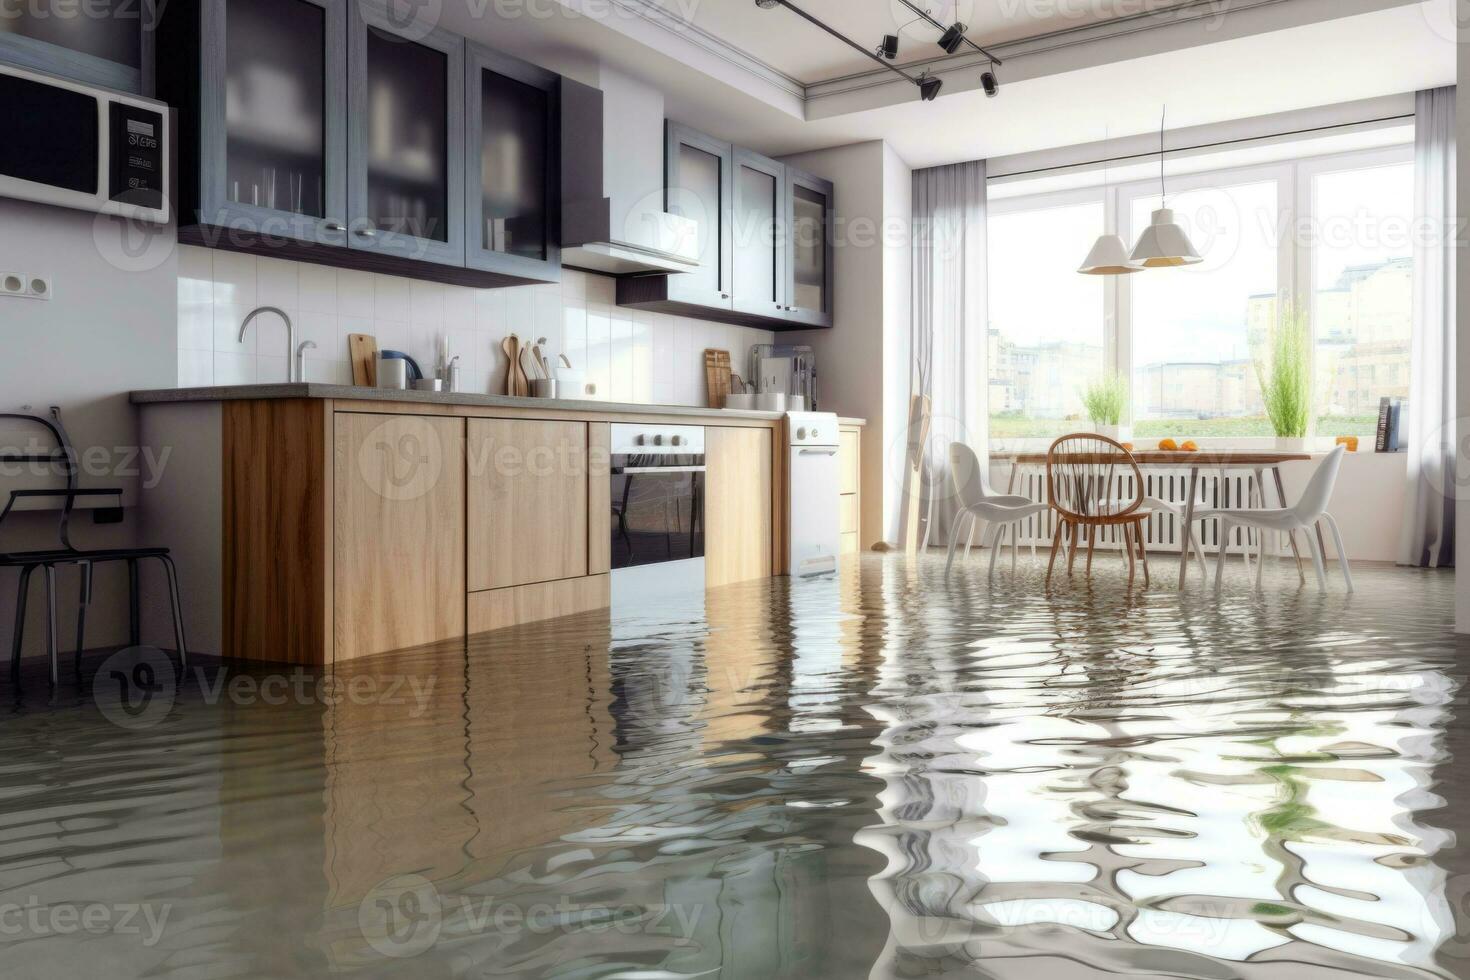 inundado piso en cocina desde agua filtración. daño. propiedad seguro. generativo ai foto